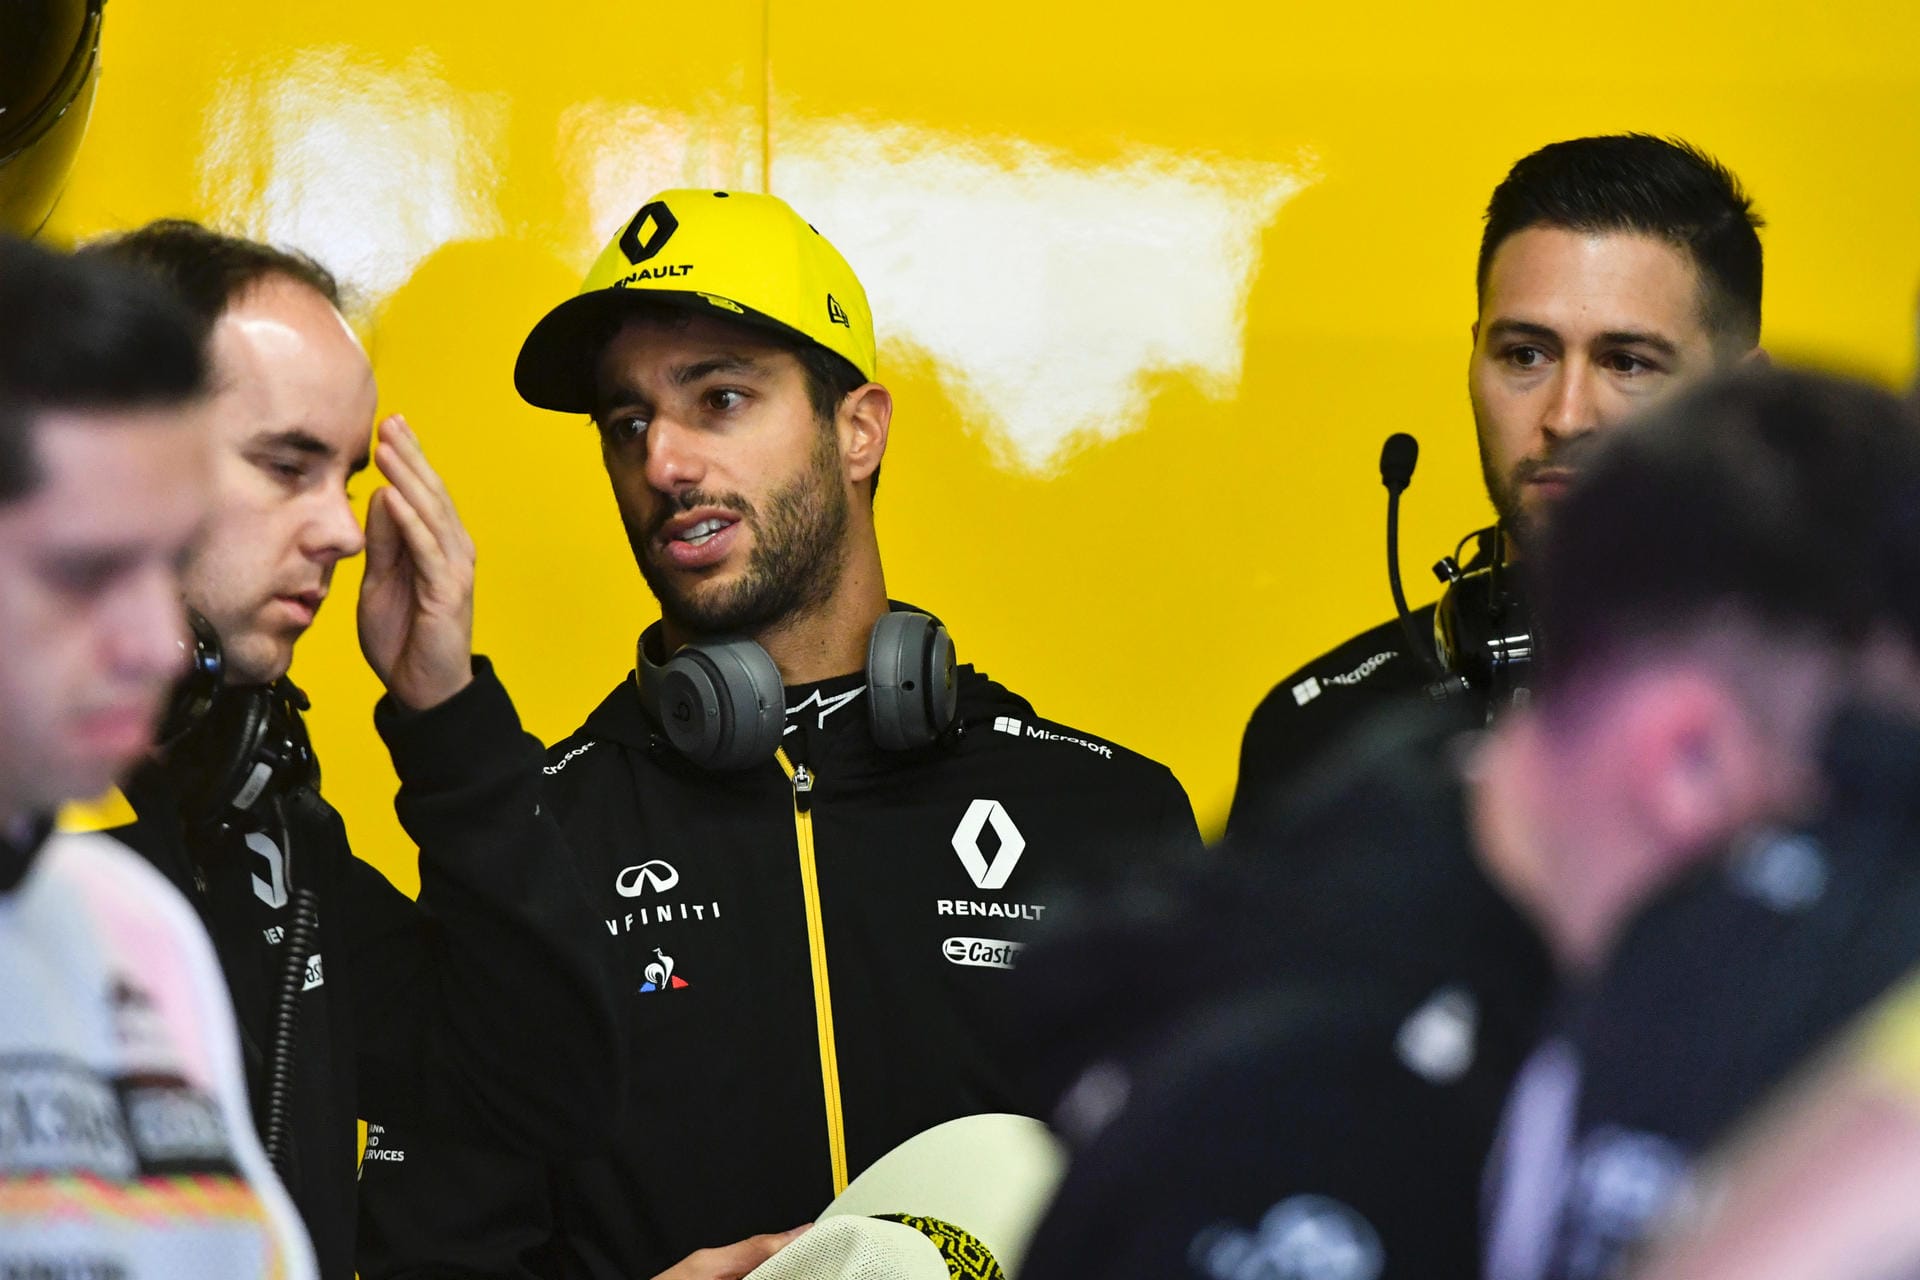 Daniel Ricciardo (Renault, 54 Punkte): Das teaminterne Duell mit Nico Hülkenberg hat der Australier klar für sich entschieden – und musste in seinem ersten Jahr bei Renault trotzdem kleinere Brötchen backen als zuvor bei Red Bull. Ricciardo hat allerdings das Beste daraus gemacht, fuhr besonders in der zweiten Saisonhälfte konstant in die Punkte. Nicht mehr, aber auch nicht weniger war zu erwarten. Note 3.